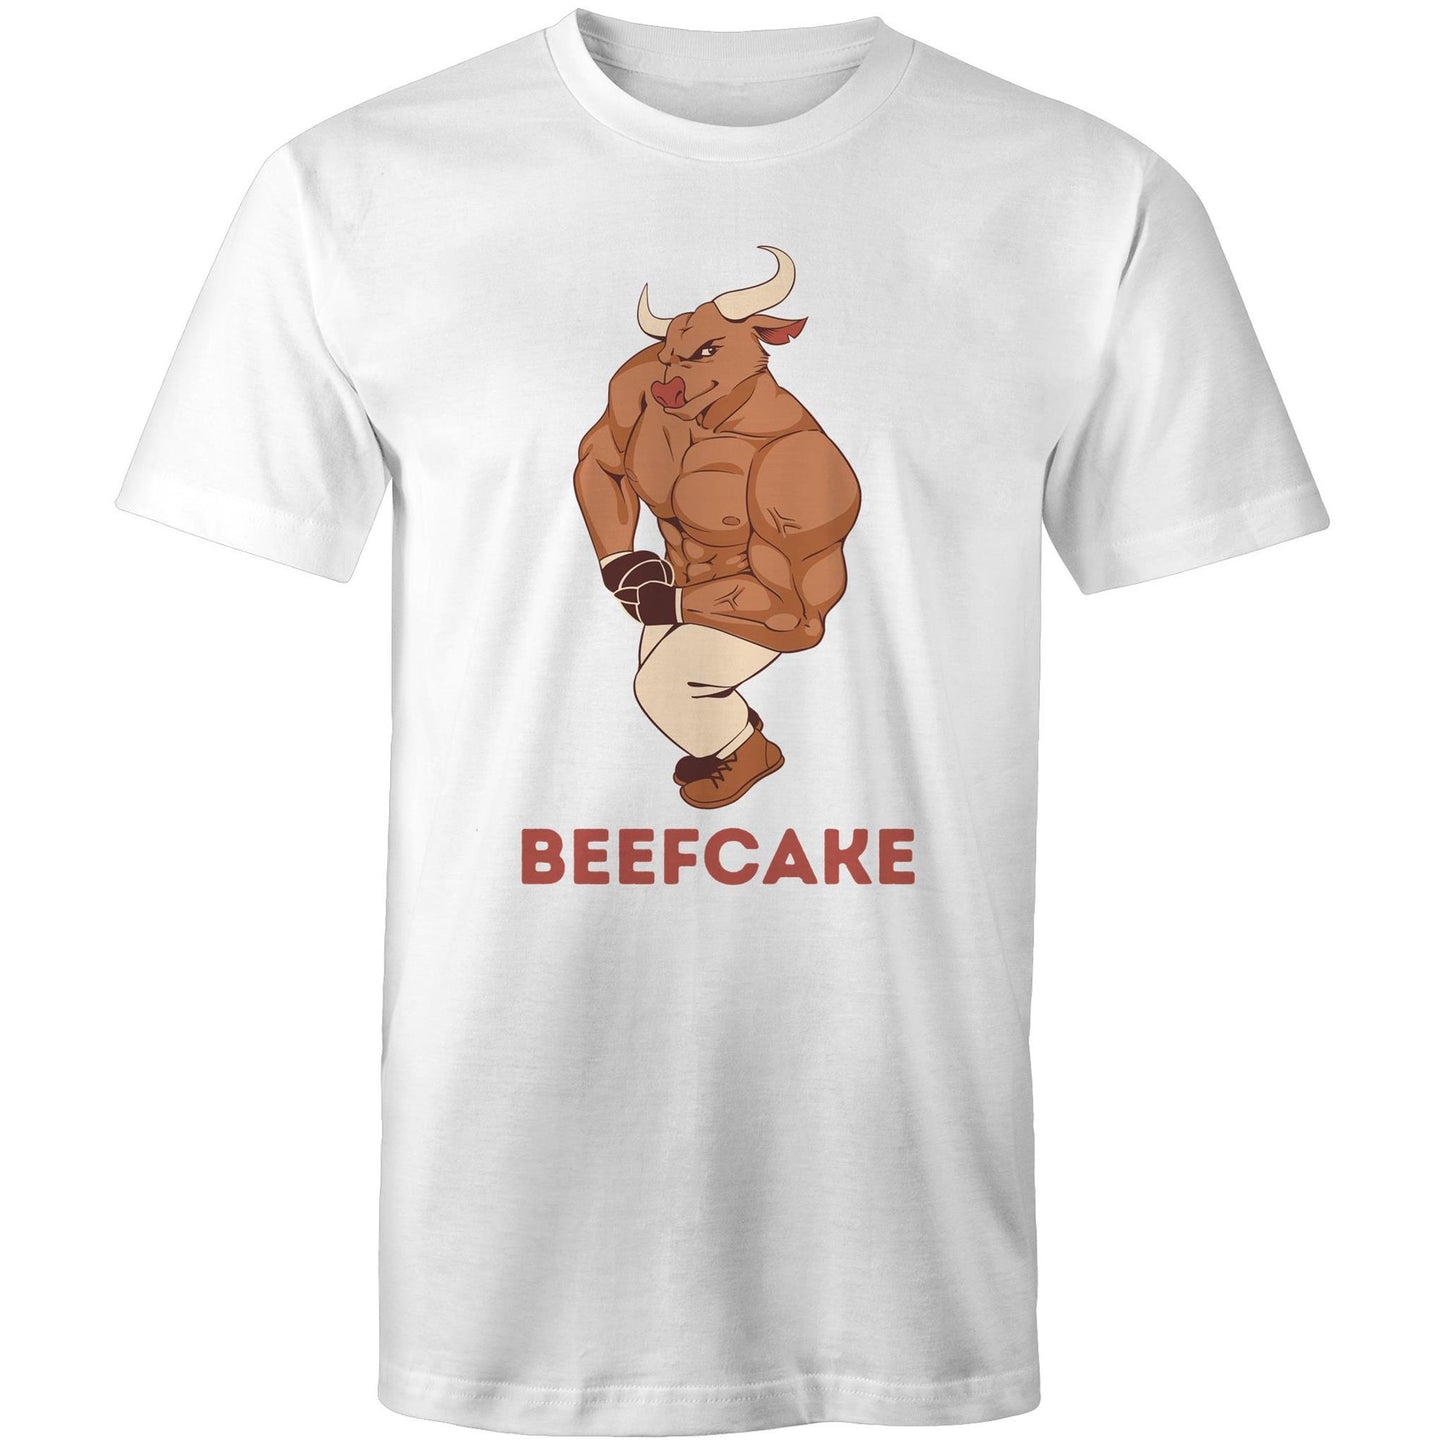 Beefcake, Bull, Gym - Mens T-Shirt White Fitness T-shirt Fitness